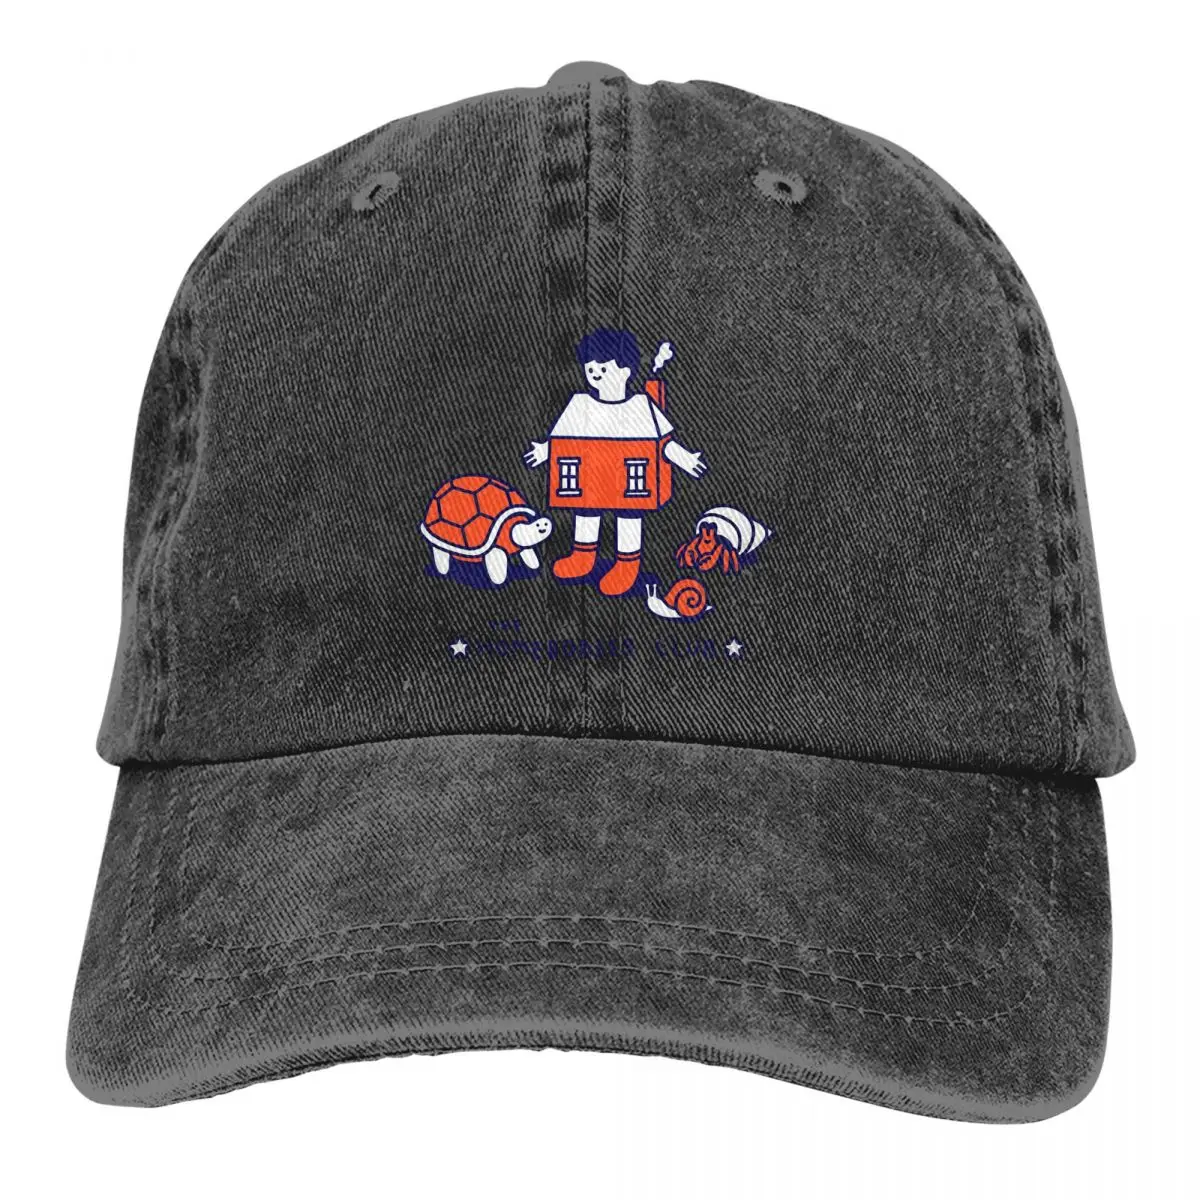 

Летняя кепка с солнцезащитным козырьком, Клубные кепки в стиле хип-хоп, волшебная ковбойская черепаха, остроконечные кепки